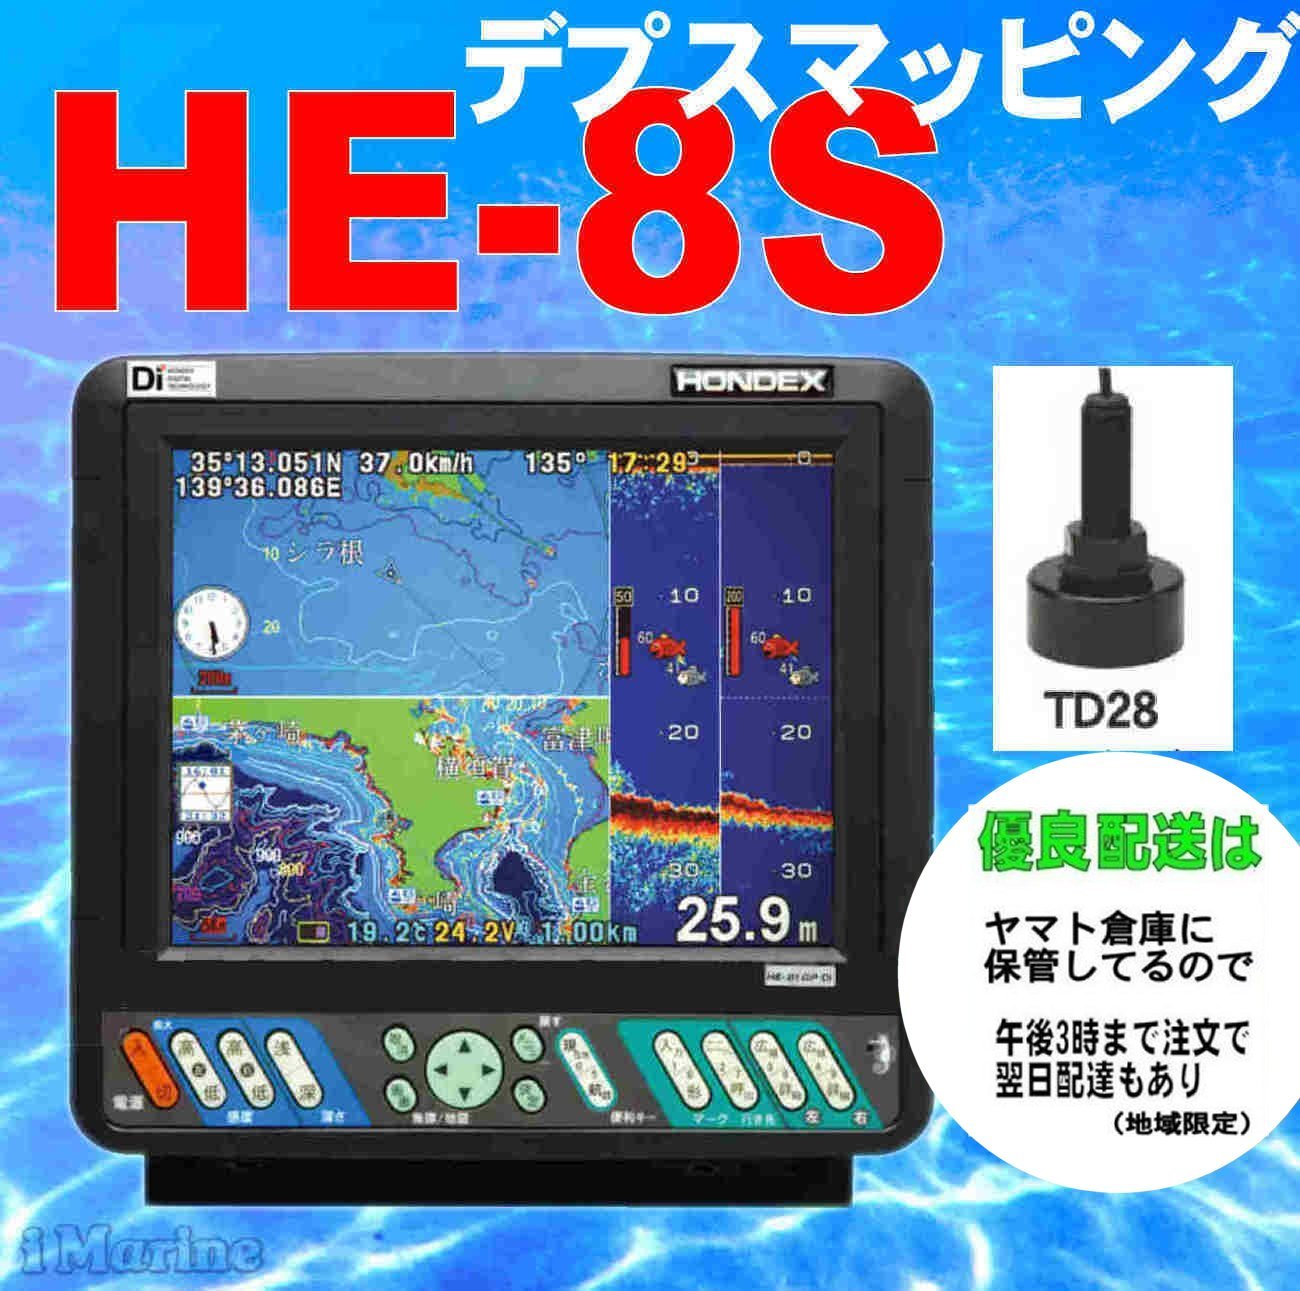 3/26 在庫あり GP-16H YFHII-104S-FADi 2kw GPS外部アンテナ付 HE-731S 